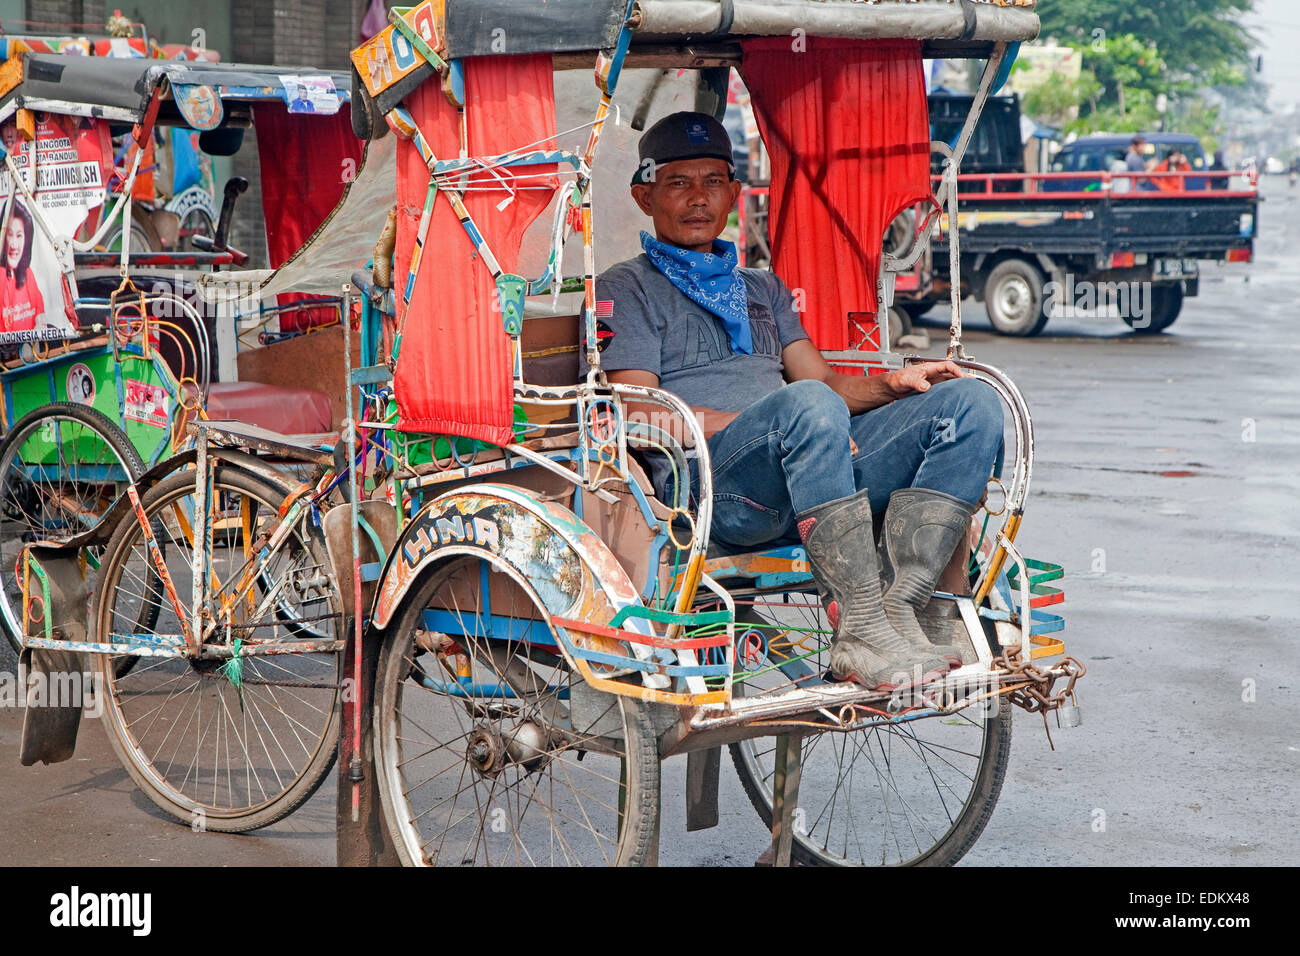 Indonesisch Becak-Fahrer wartet auf Kunden in seinem Zyklus Rickshaw, Kota Bandung, West-Java, Indonesien Stockfoto